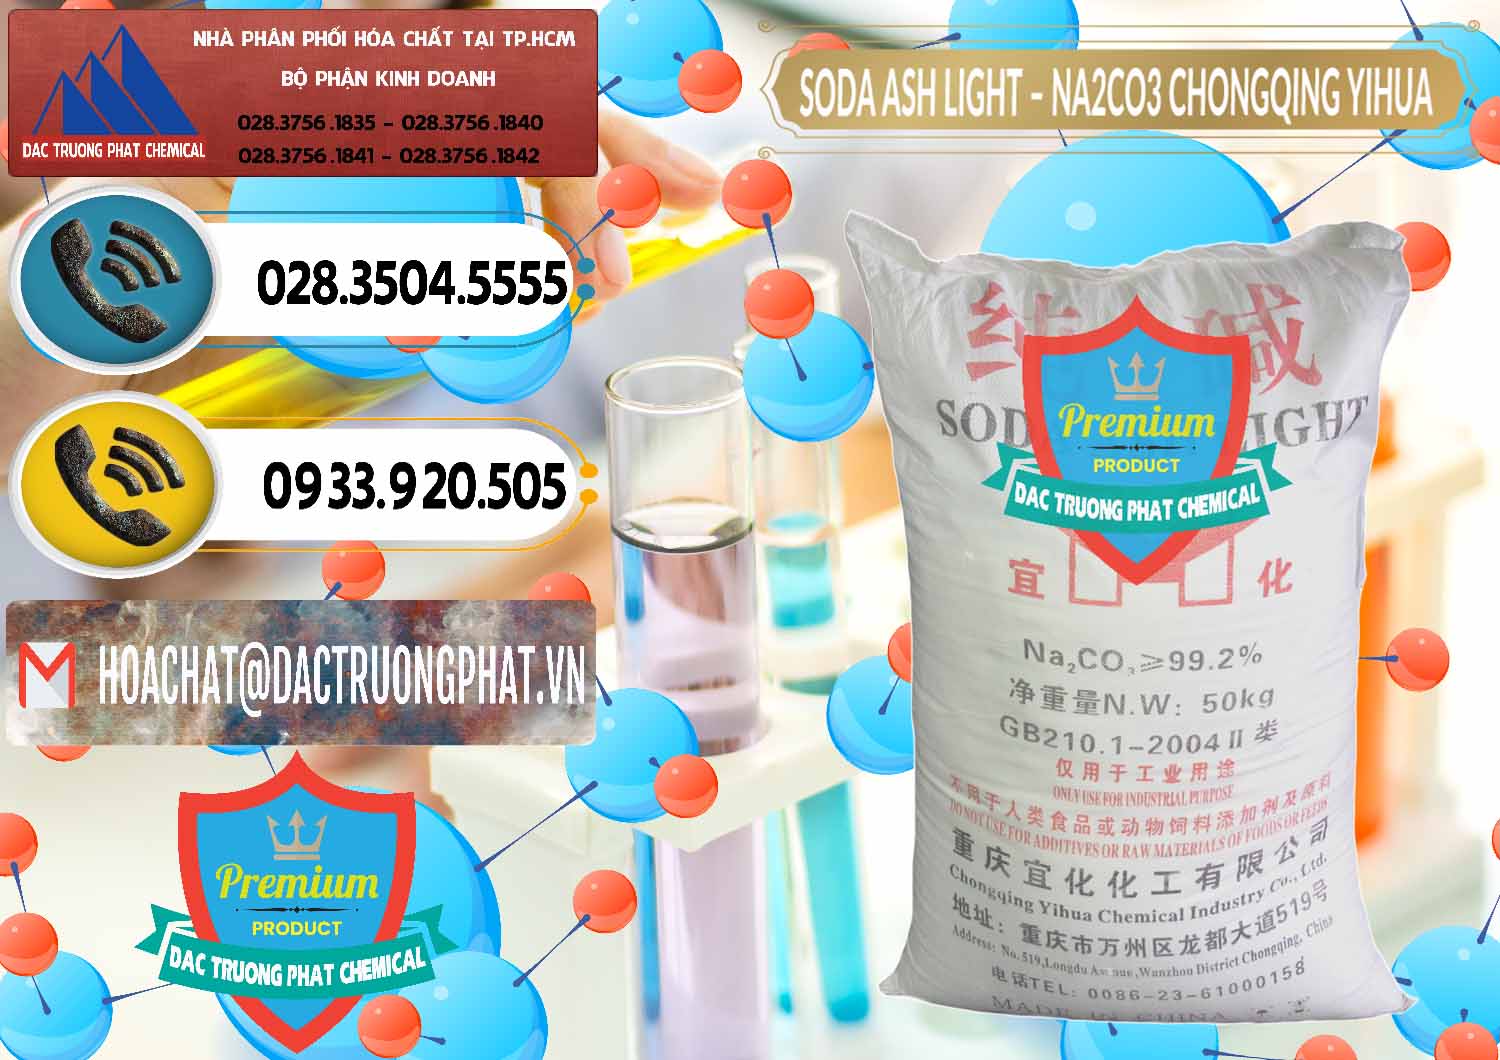 Cty chuyên bán và cung cấp Soda Ash Light - NA2CO3 Chongqing Yihua Trung Quốc China - 0129 - Cty kinh doanh _ phân phối hóa chất tại TP.HCM - hoachatdetnhuom.vn